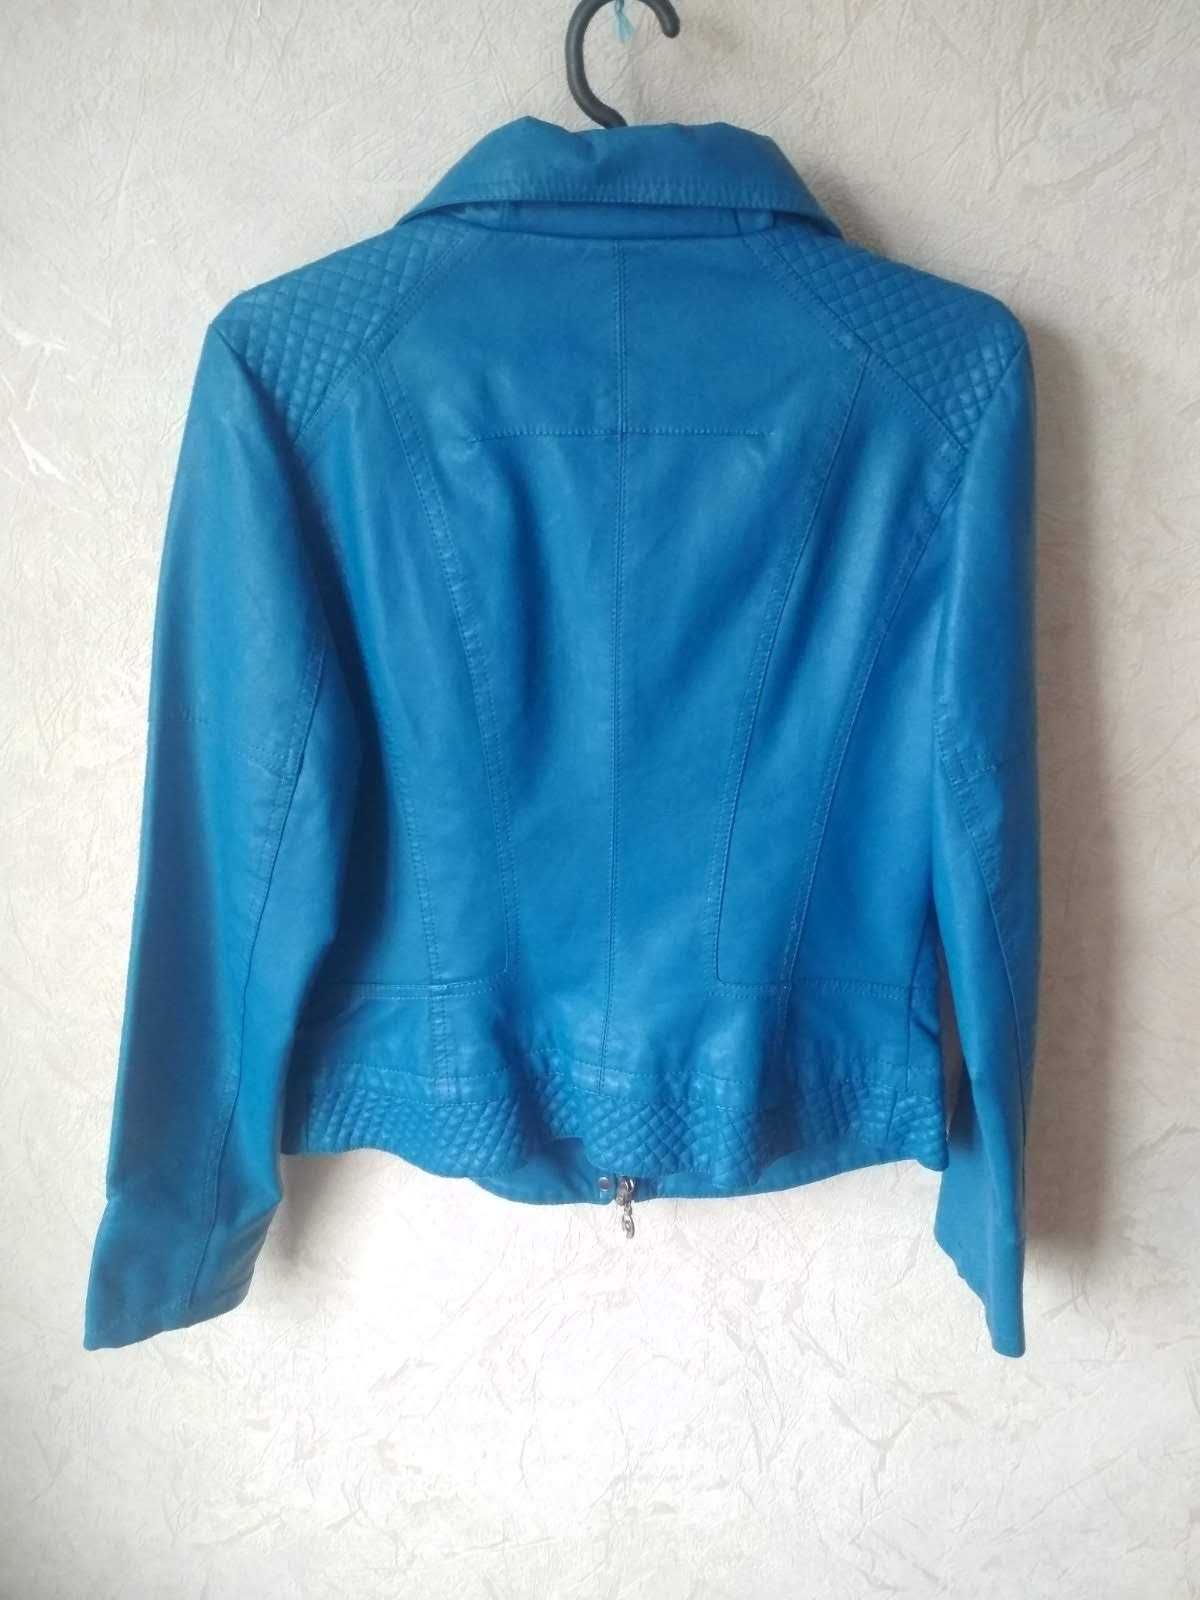 Женская курточка черная кожанка 46размер и синяя курточка кожзам 50раз